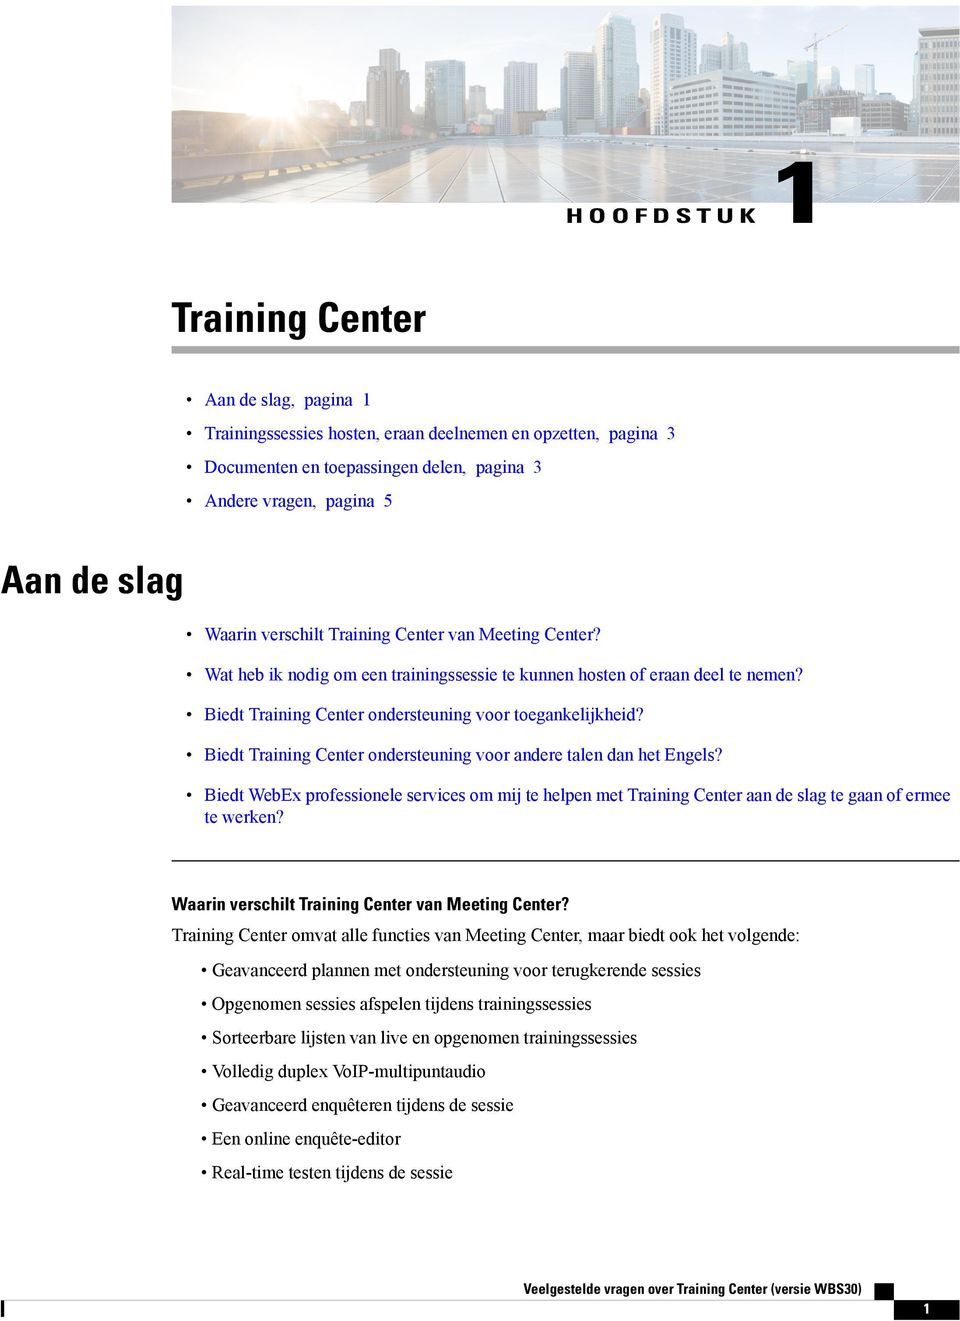 Biedt Training Center ondersteuning voor andere talen dan het Engels? Biedt WebEx professionele services om mij te helpen met Training Center aan de slag te gaan of ermee te werken?